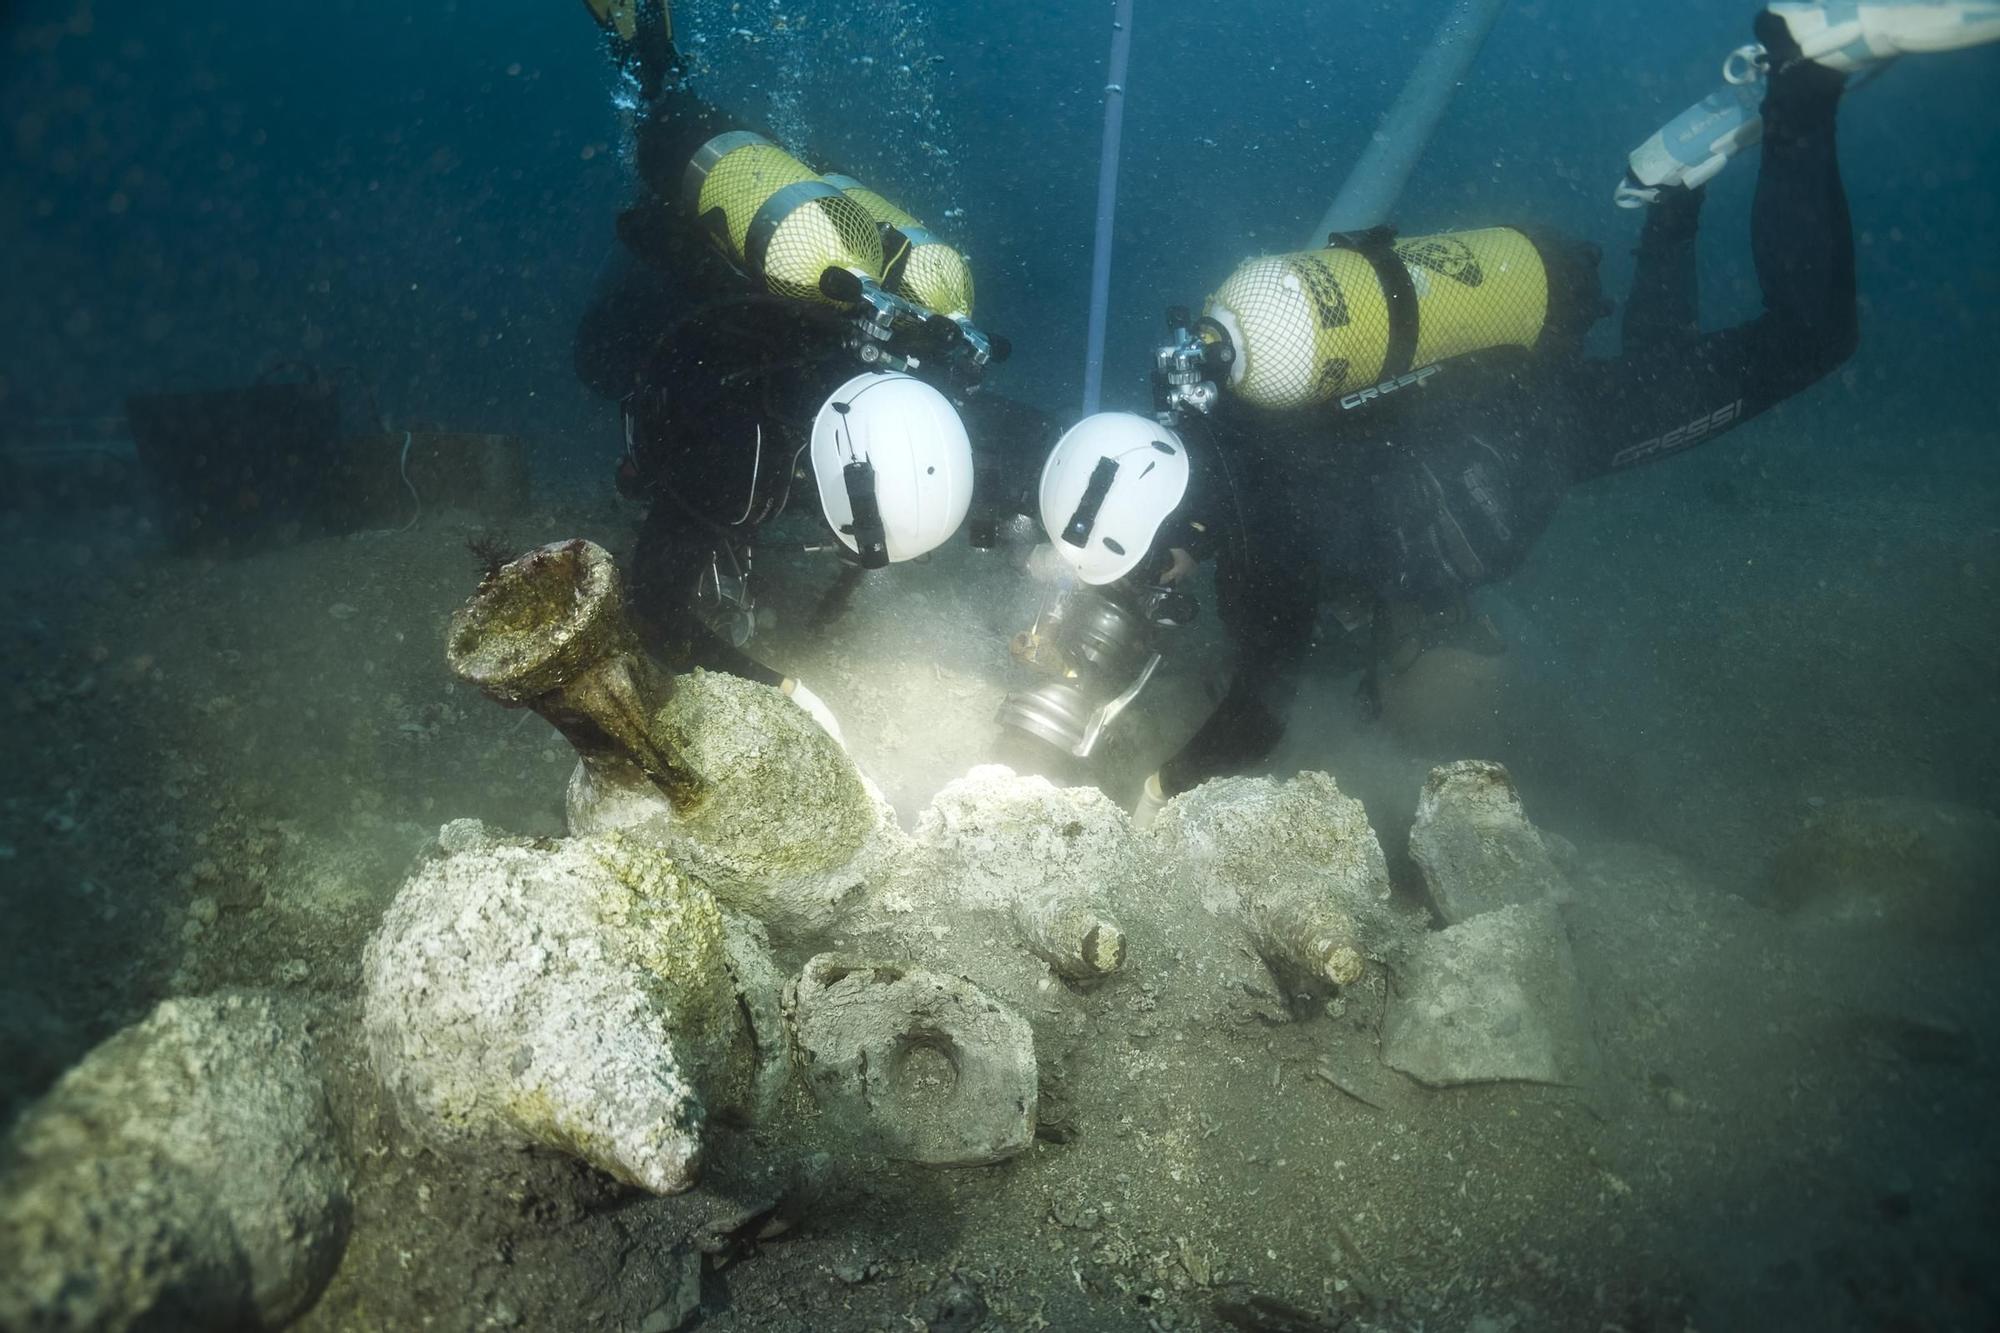 Els arqueòlegs estudiant les fustes del vaixell romà del segle I aC enfonsat durant un temporal a les illes Formigues